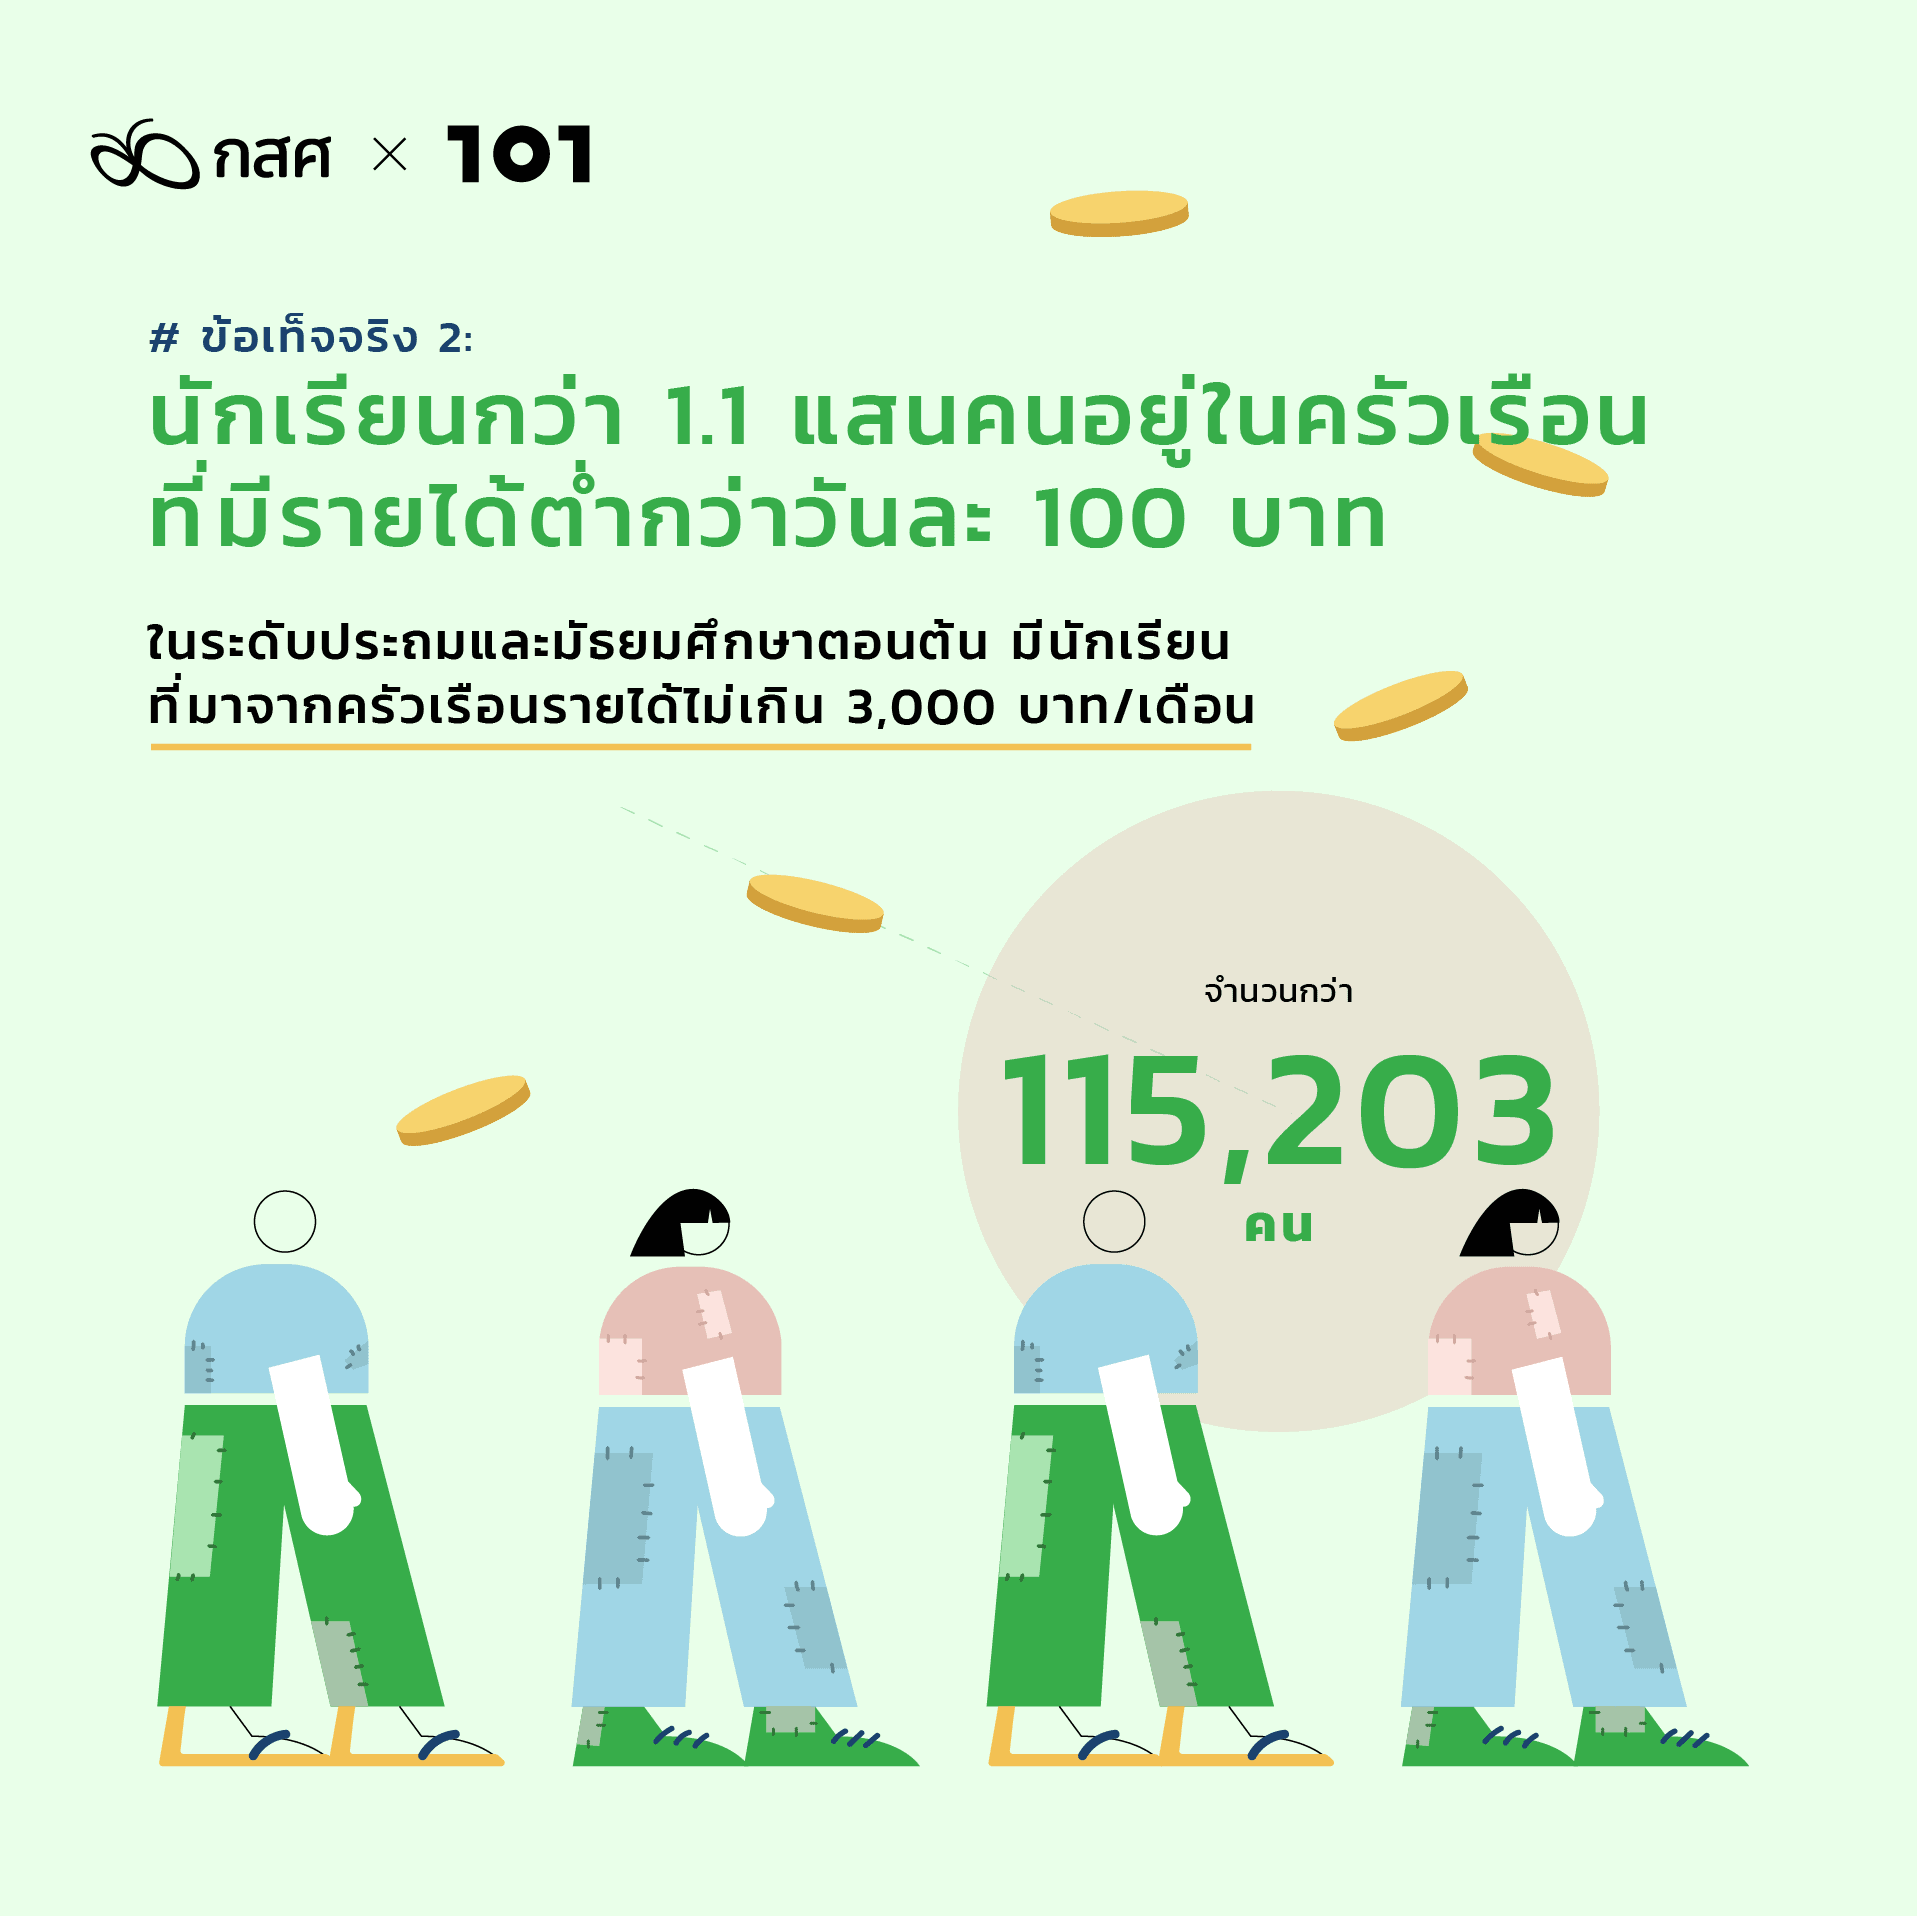 สำรวจความเหลื่อมล้ำการศึกษาไทย เพิ่มโอกาสให้เด็กยากจน: ข้อเท็จจริง 2: นักเรียนกว่า 1.1 แสนคนอยู่ในครัวเรือนที่มีรายได้ต่ำกว่าวันละ 100 บาท